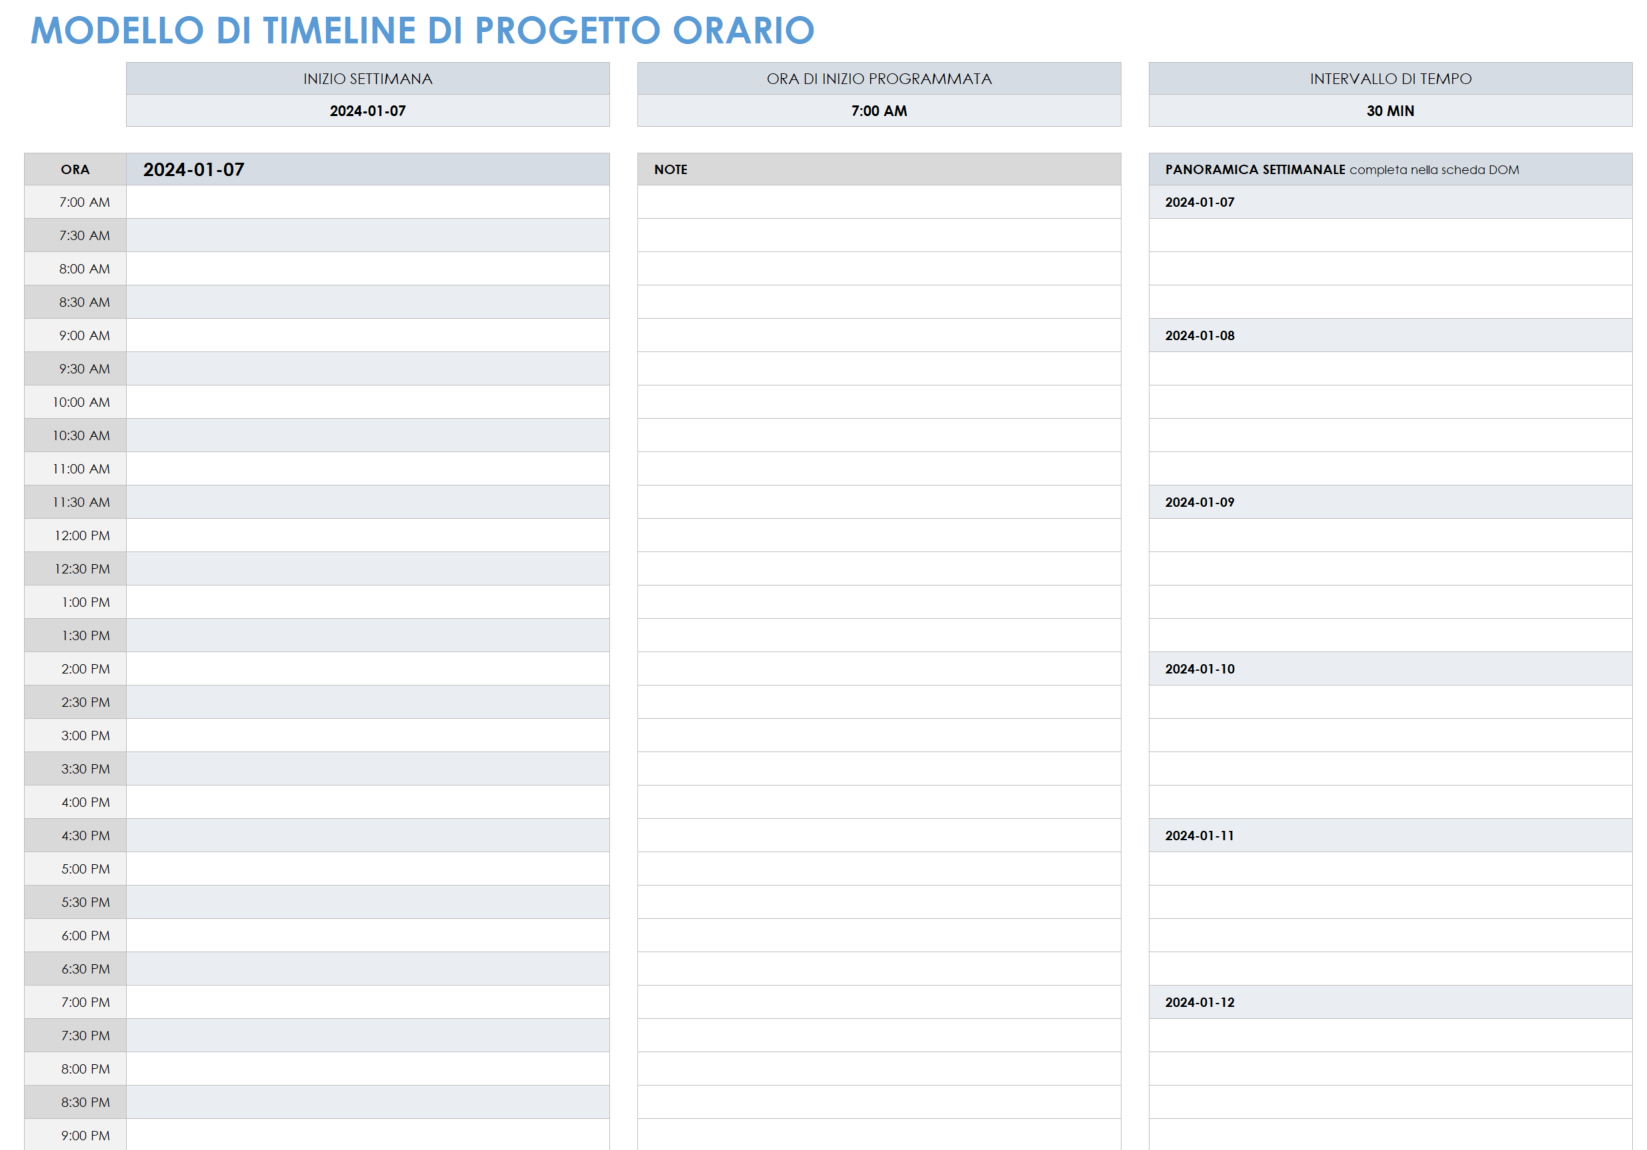 Modello di timeline di progetto orario per modello Excel